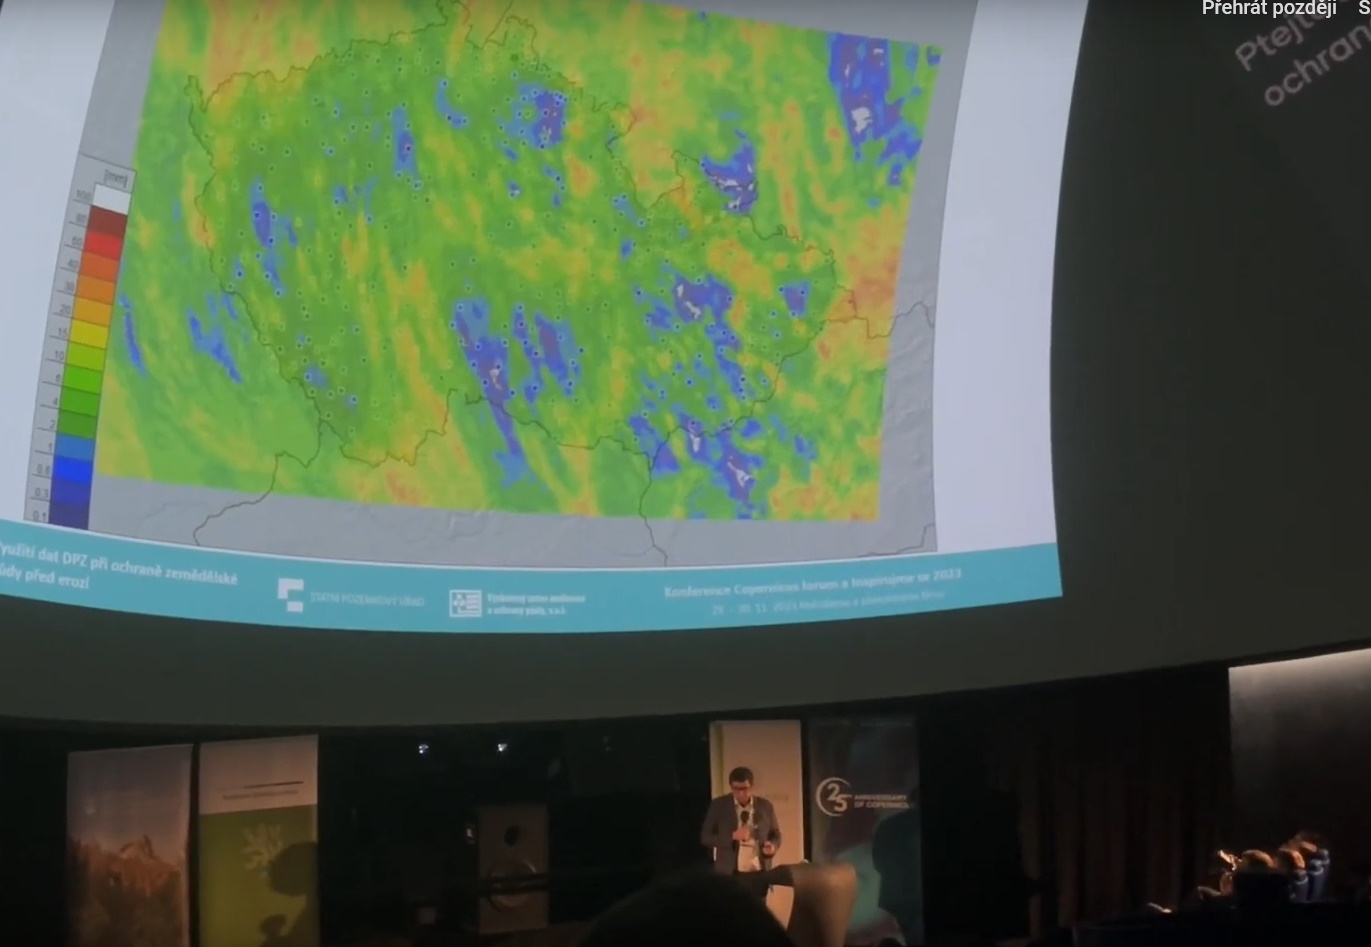 Přečtete si více ze článku Univerzita obrany prezentovala na brněnské hvězdárně využití družicových snímků